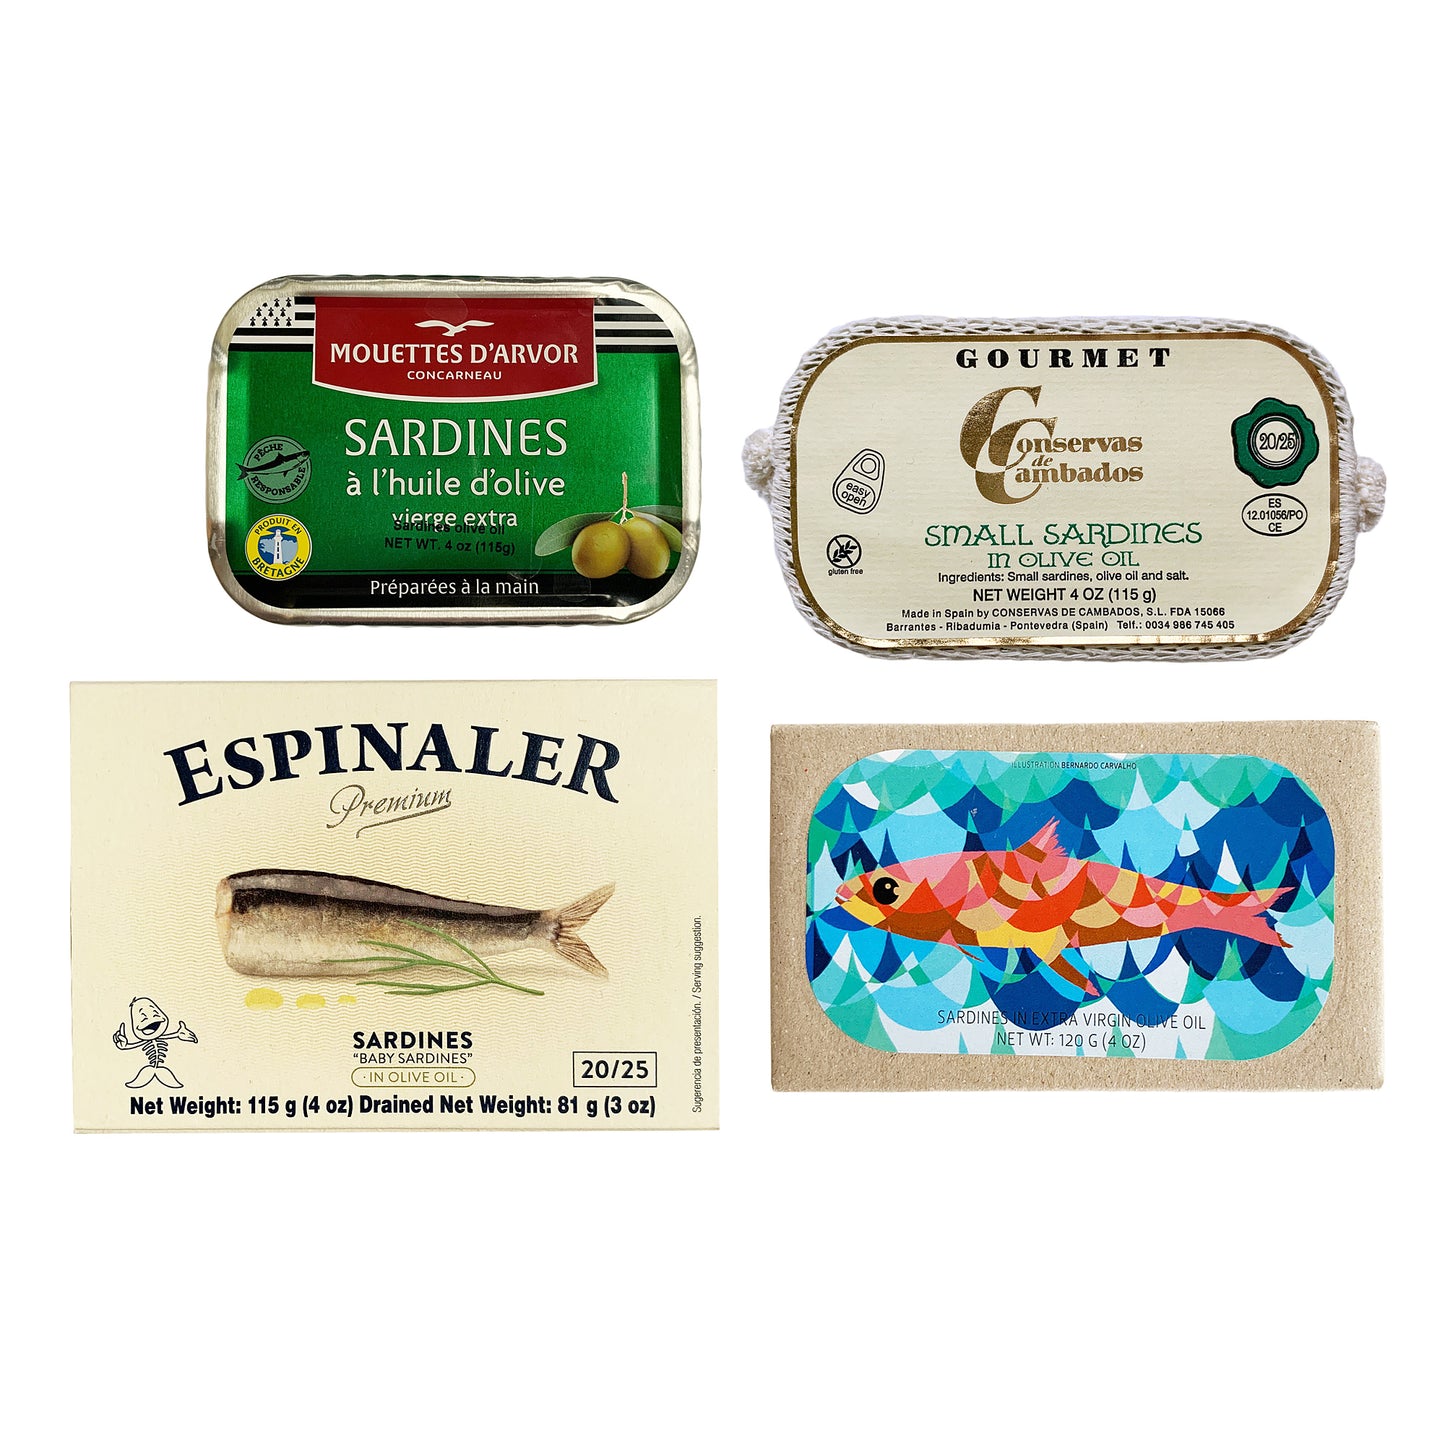 Paquete variado de sardinas premium: incluye sardinas de Les Mouettes D'arvor, Conservas de Cambados, Jose Gourmet y Espinaler (4 piezas)